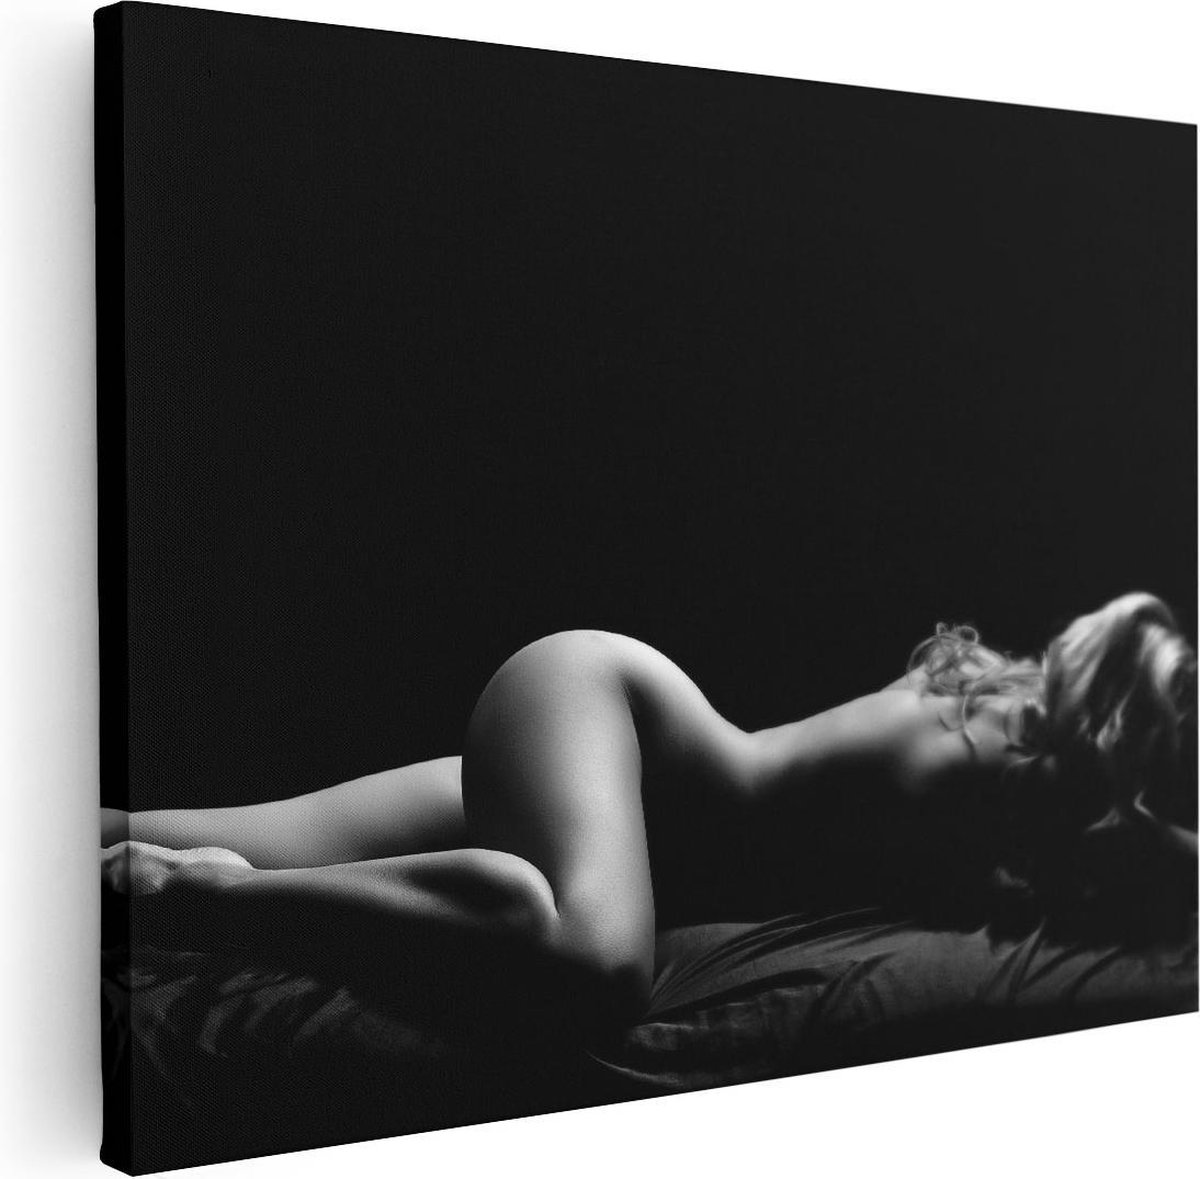 Artaza Canvas Schilderij Vrouw Naakt in Bed - Erotiek - Zwart Wit - 40x30